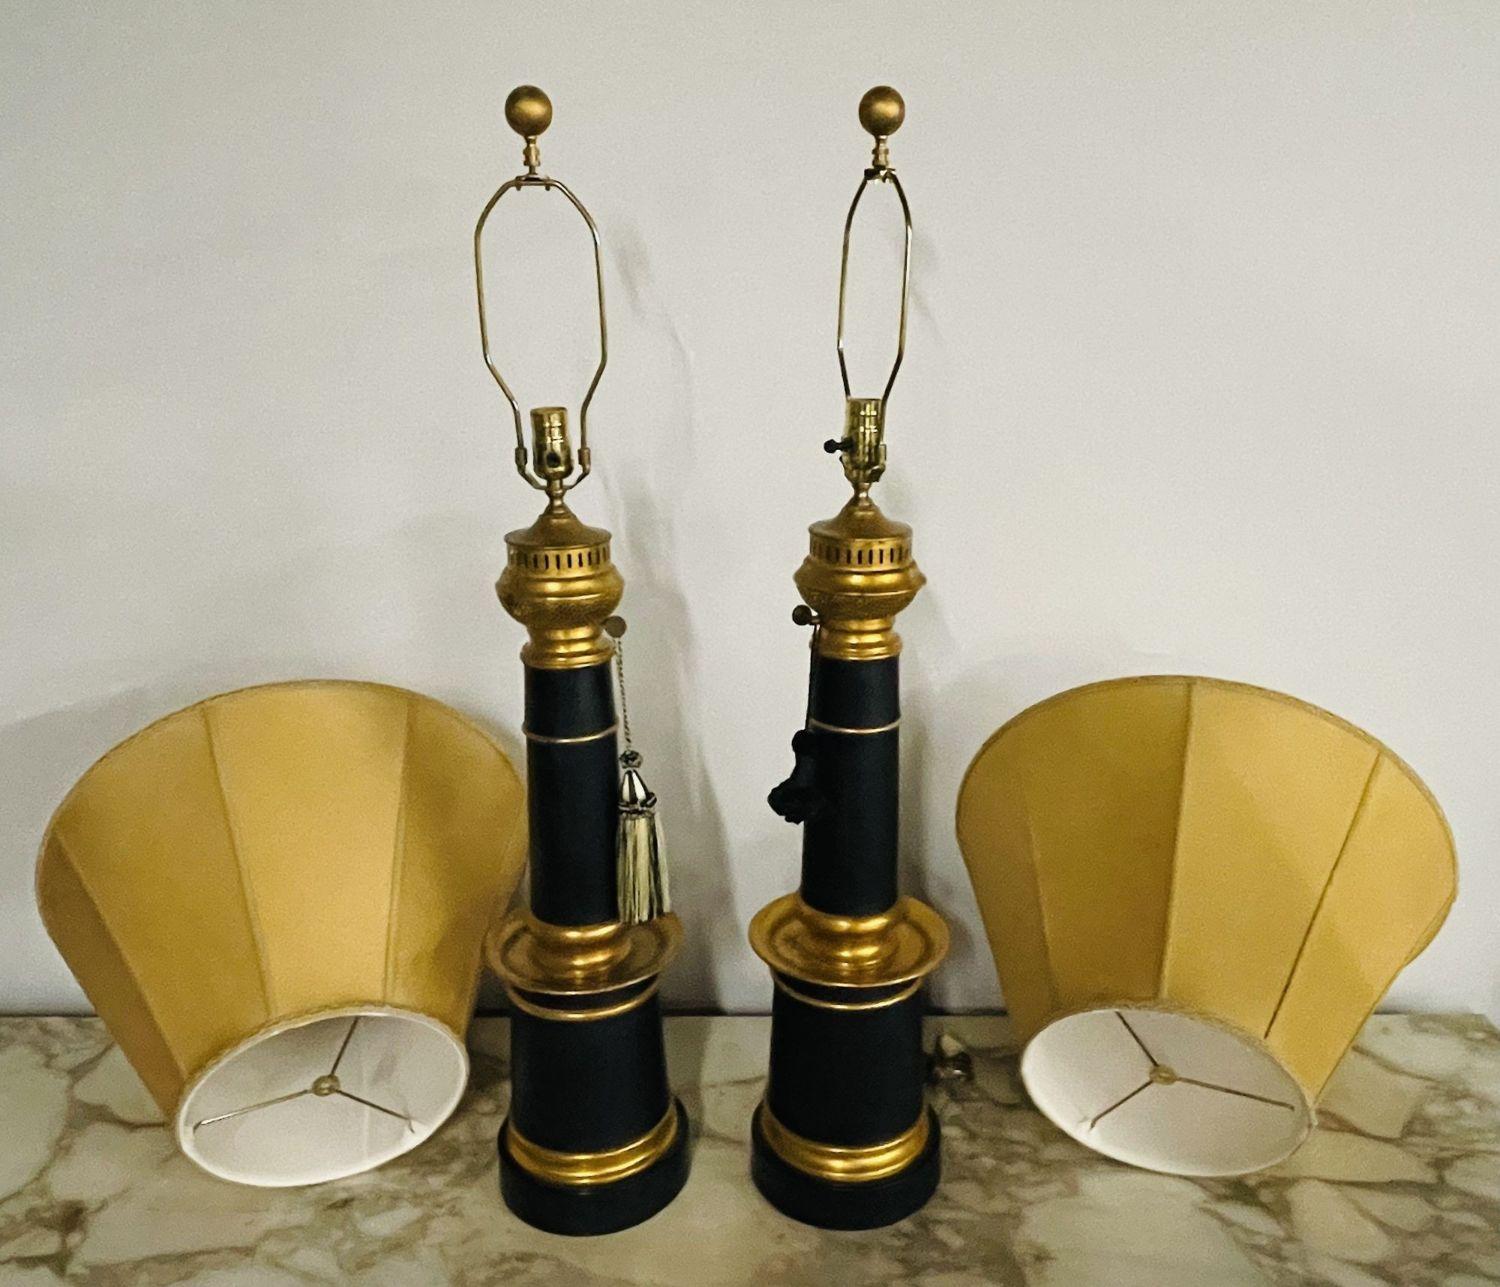 Paire de lampes de table de style Hollywood Regency avec des abat-jour personnalisés.
 
Ces étonnantes lampes de table en métal ébène et doré sont élégantes et stylées et ont l'apparence de lampes à huile anciennes. Cette grande et impressionnante